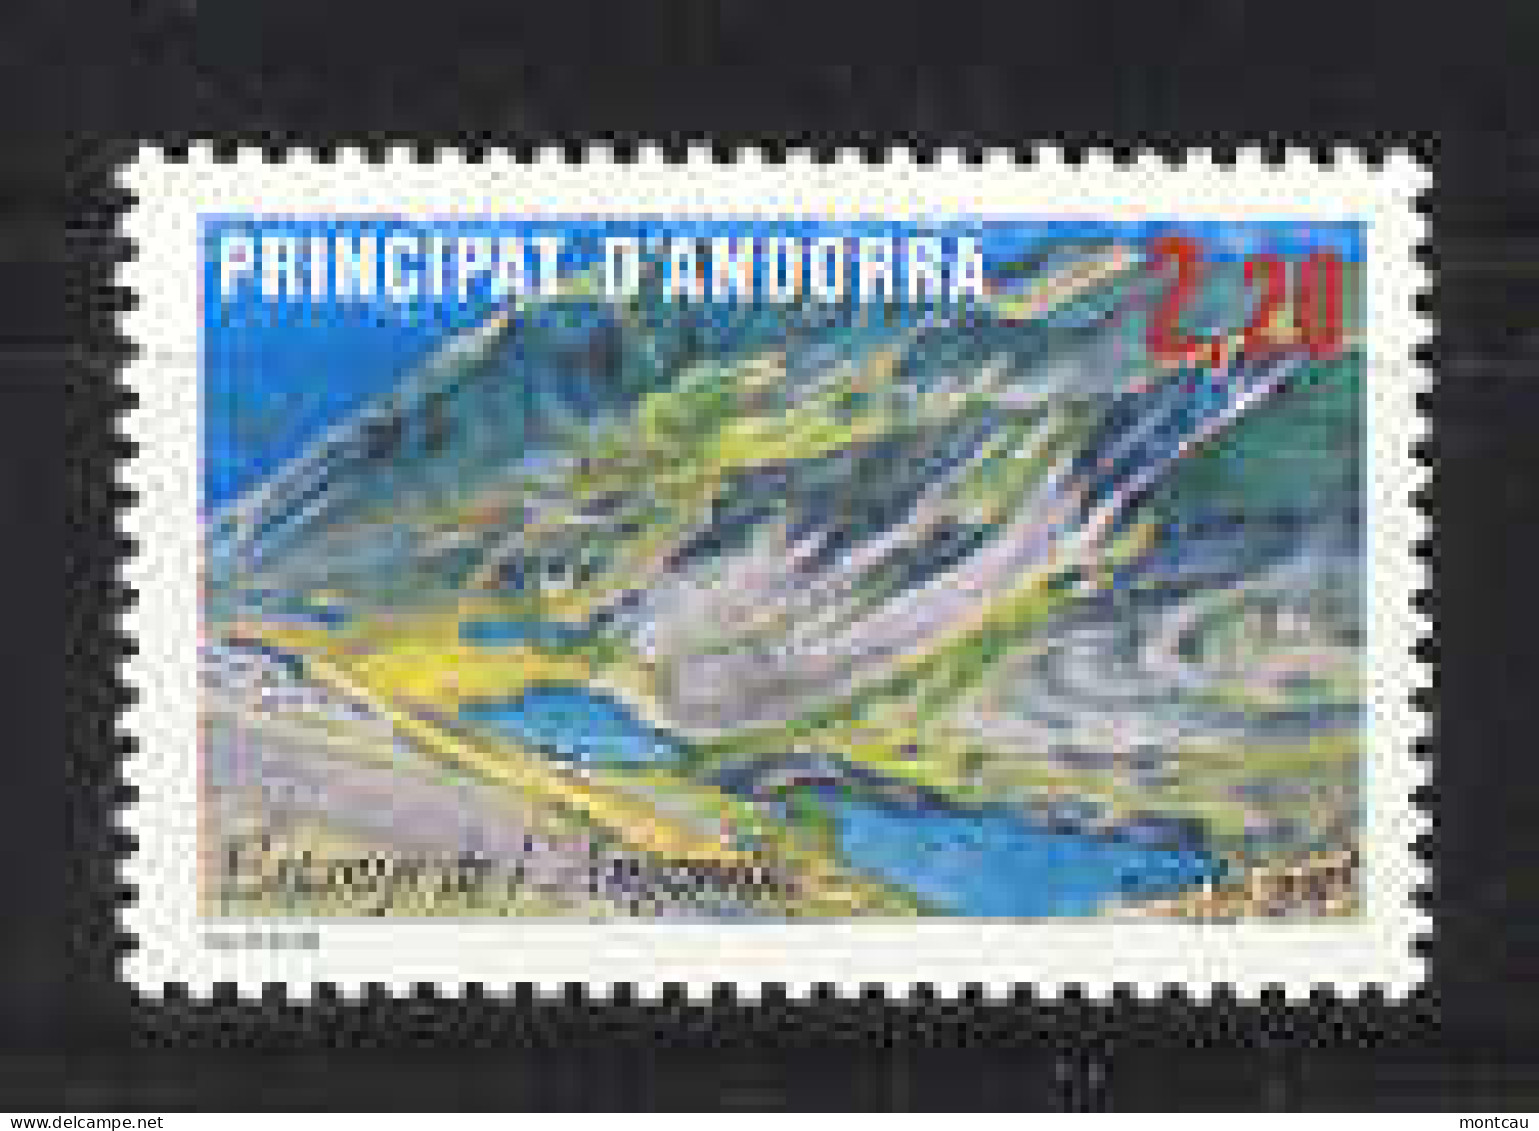 Andorra -Franc 1986 Lago De Angonella Y=351 E=372 (**) - Nuevos